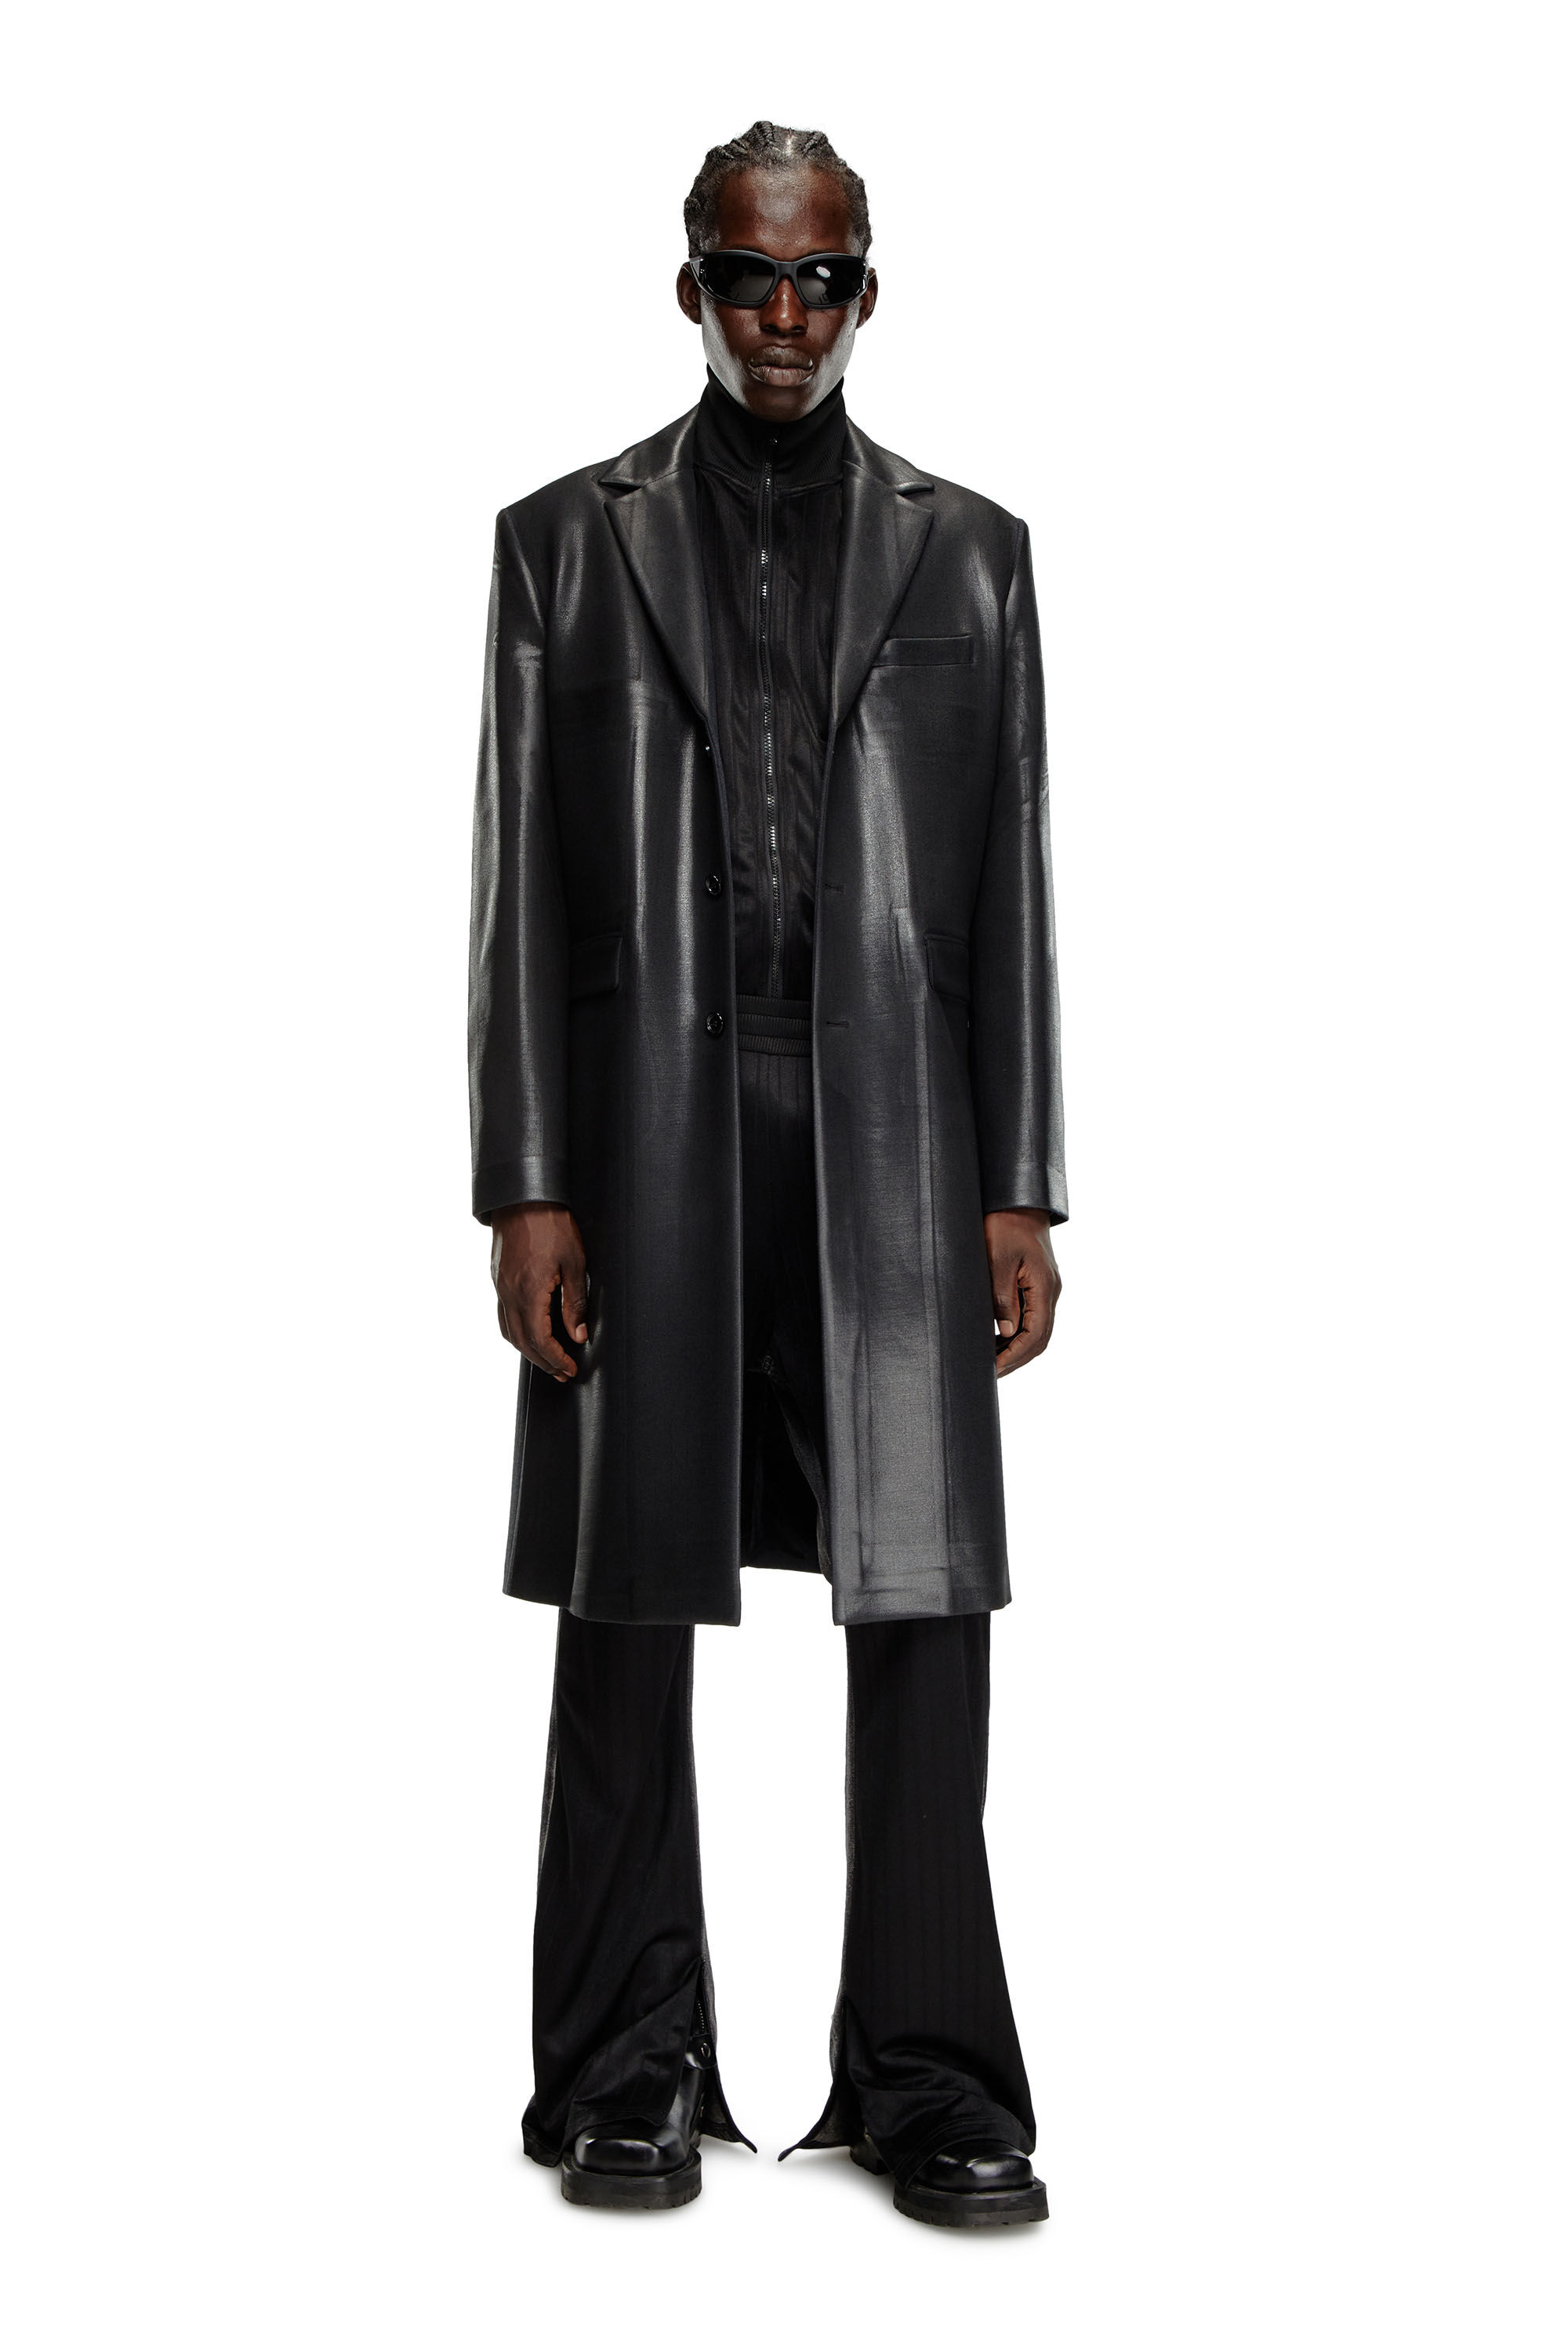 Diesel - J-DENNER, Man Coat in pinstriped cool wool in Black - Image 1